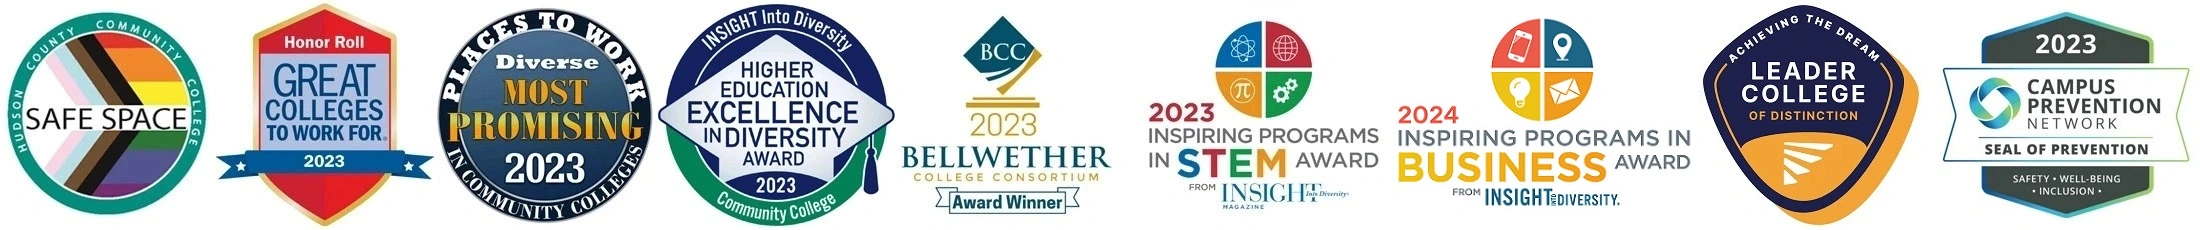 Premios e insignias de HCCC